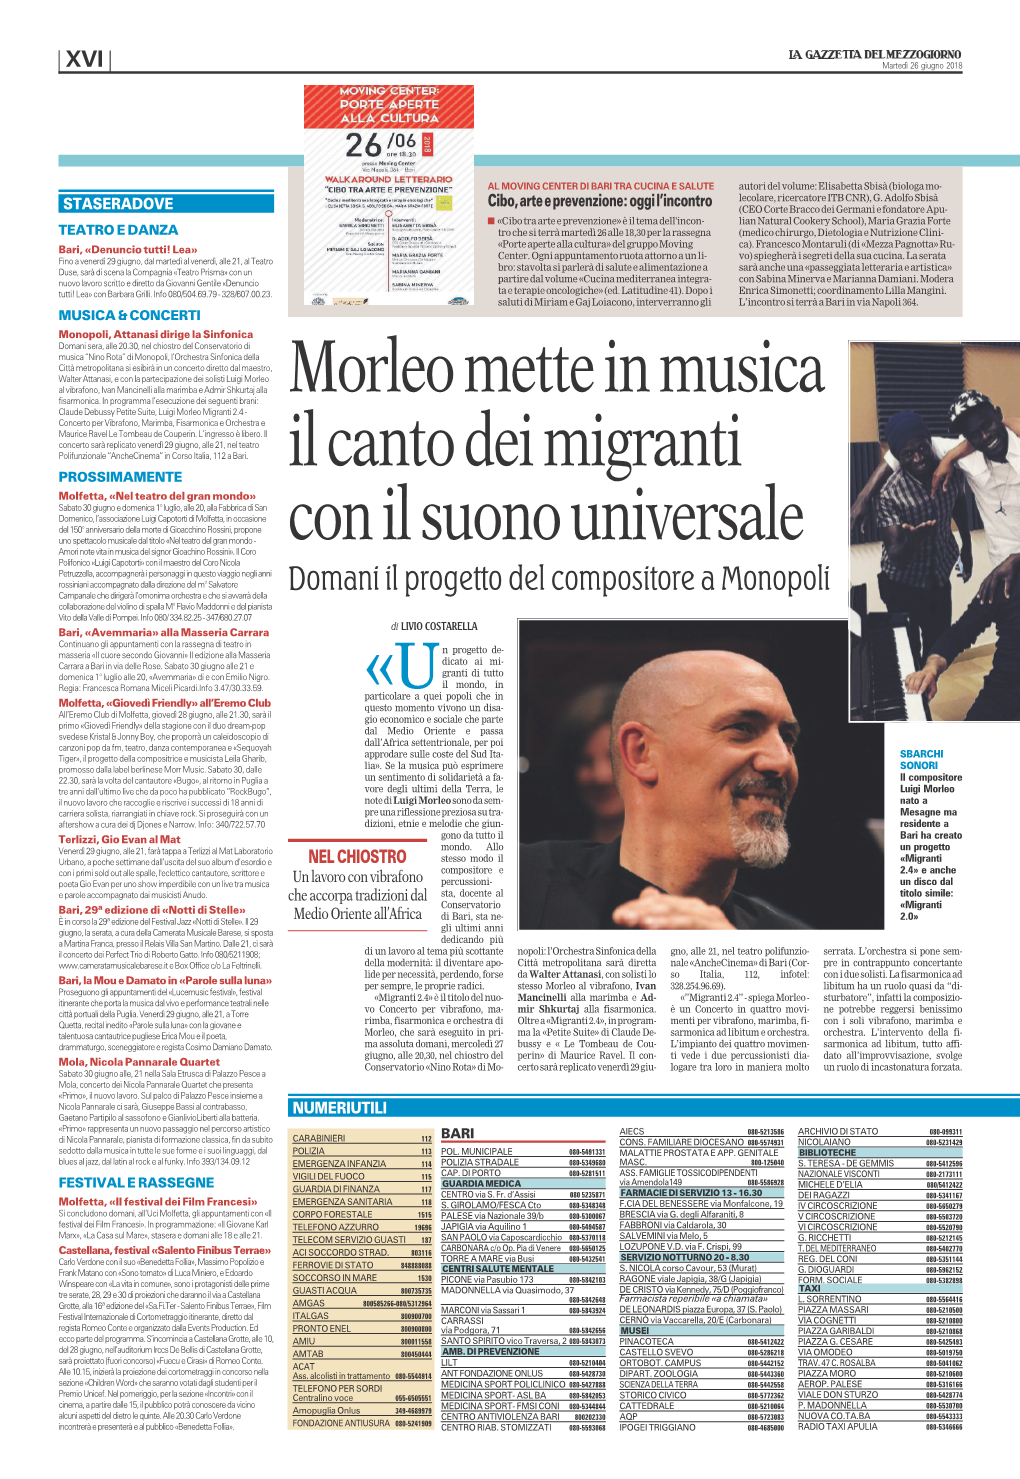 Morleo Mette in Musica Il Canto Dei Migranti Con Il Suono Universale